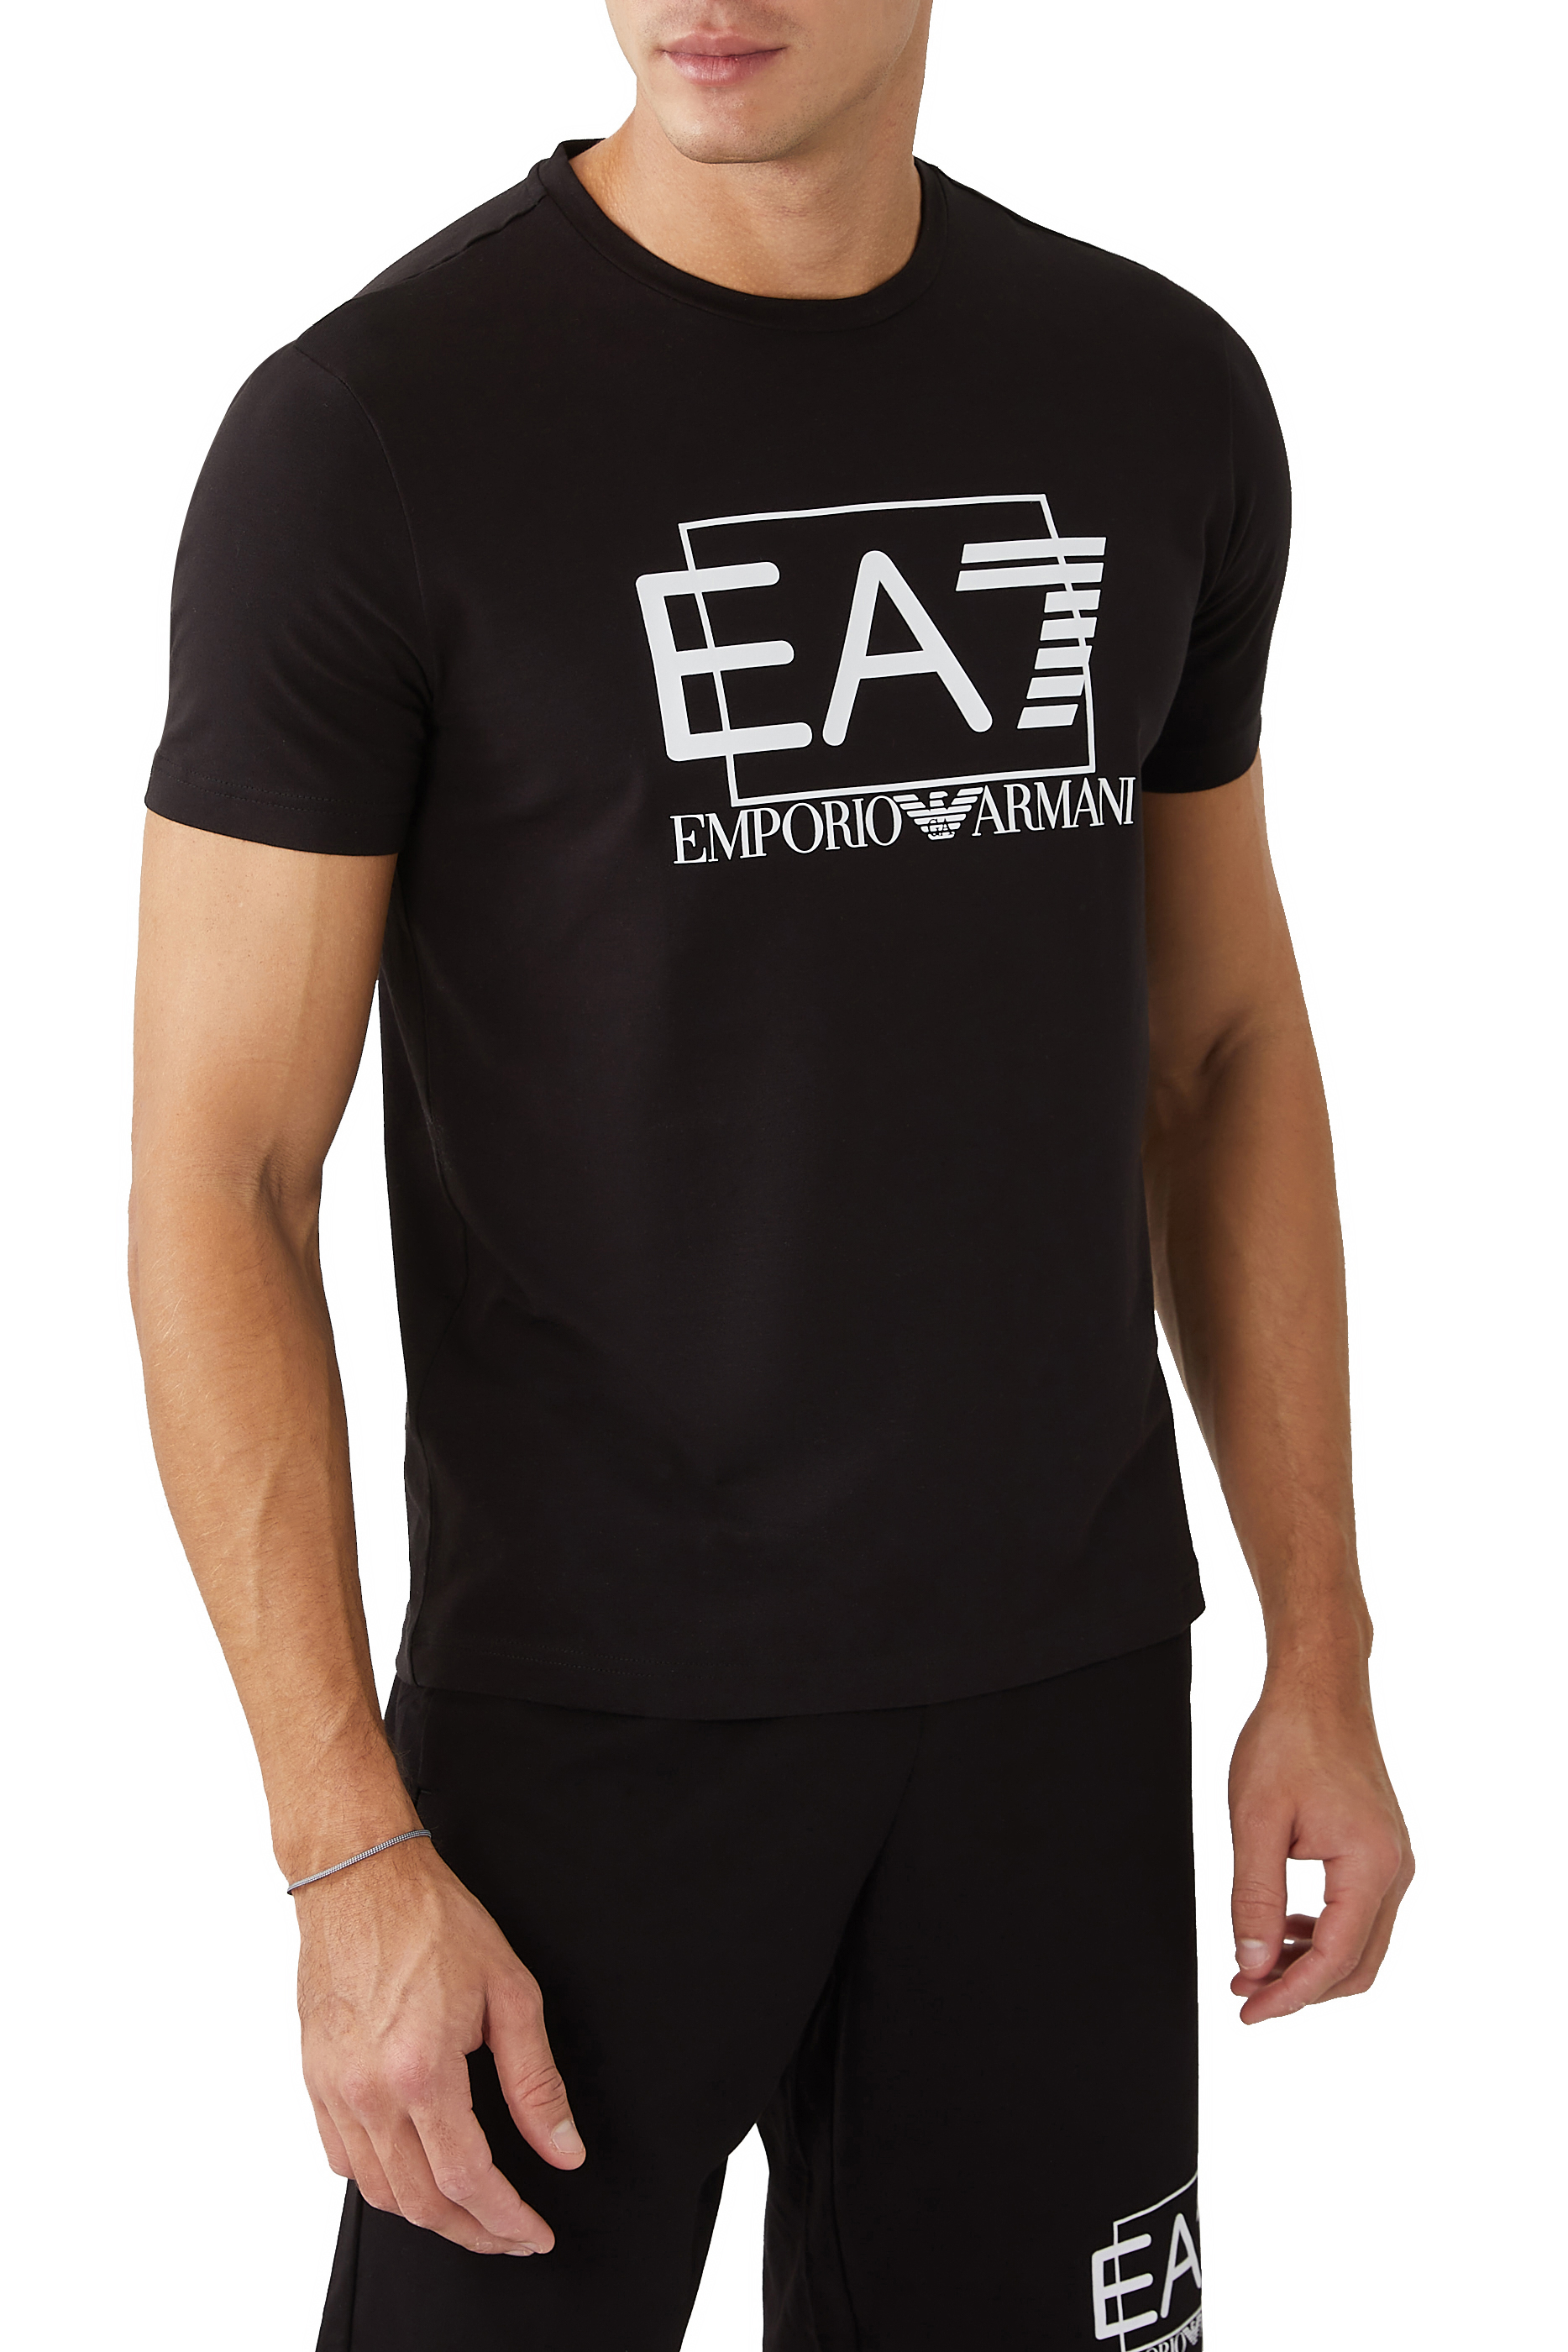 Buy Emporio Armani EA7 Logo T-Shirt for Mens | Bloomingdale's KSA